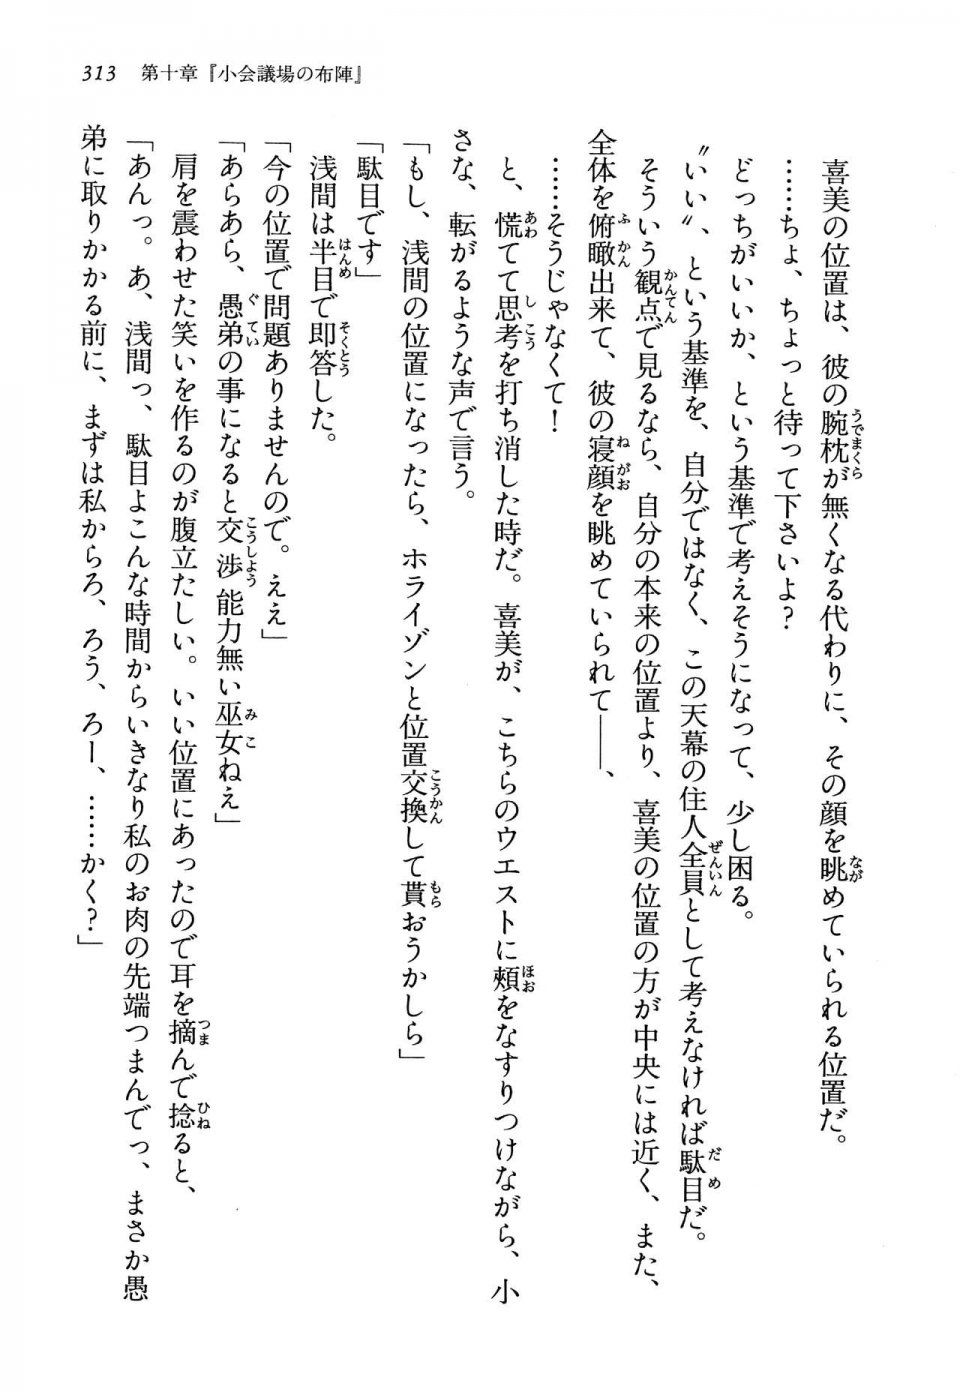 Kyoukai Senjou no Horizon LN Vol 13(6A) - Photo #313